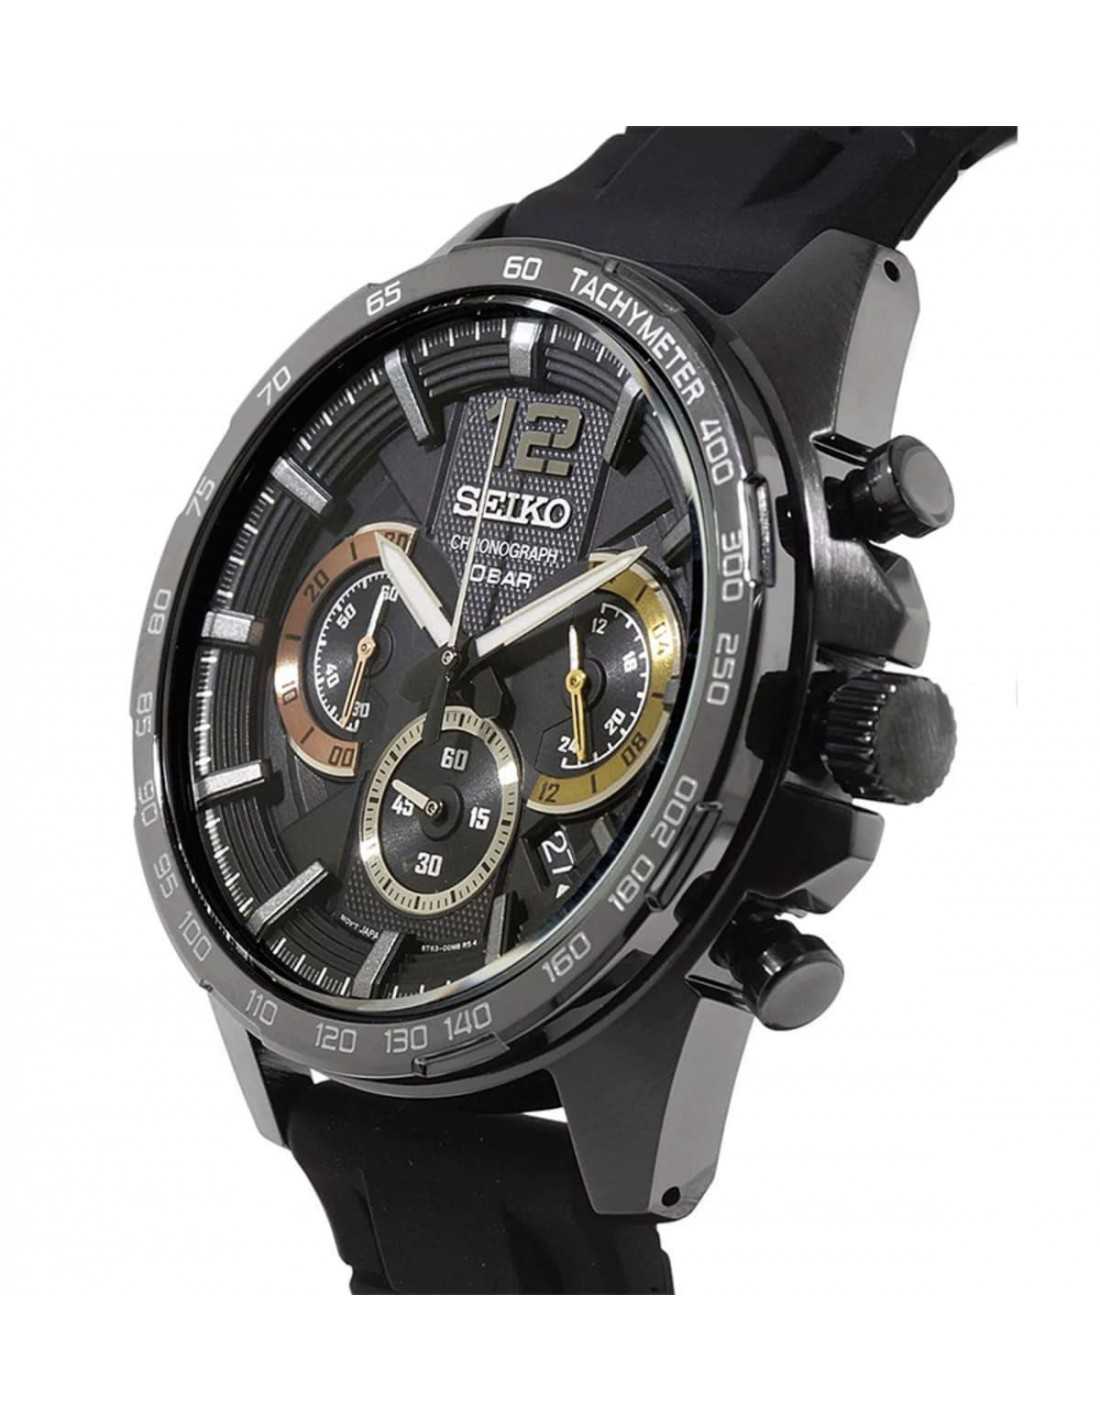 Reloj Seiko Core Cronografo Acero Negro Cuarzo Ssb397p1